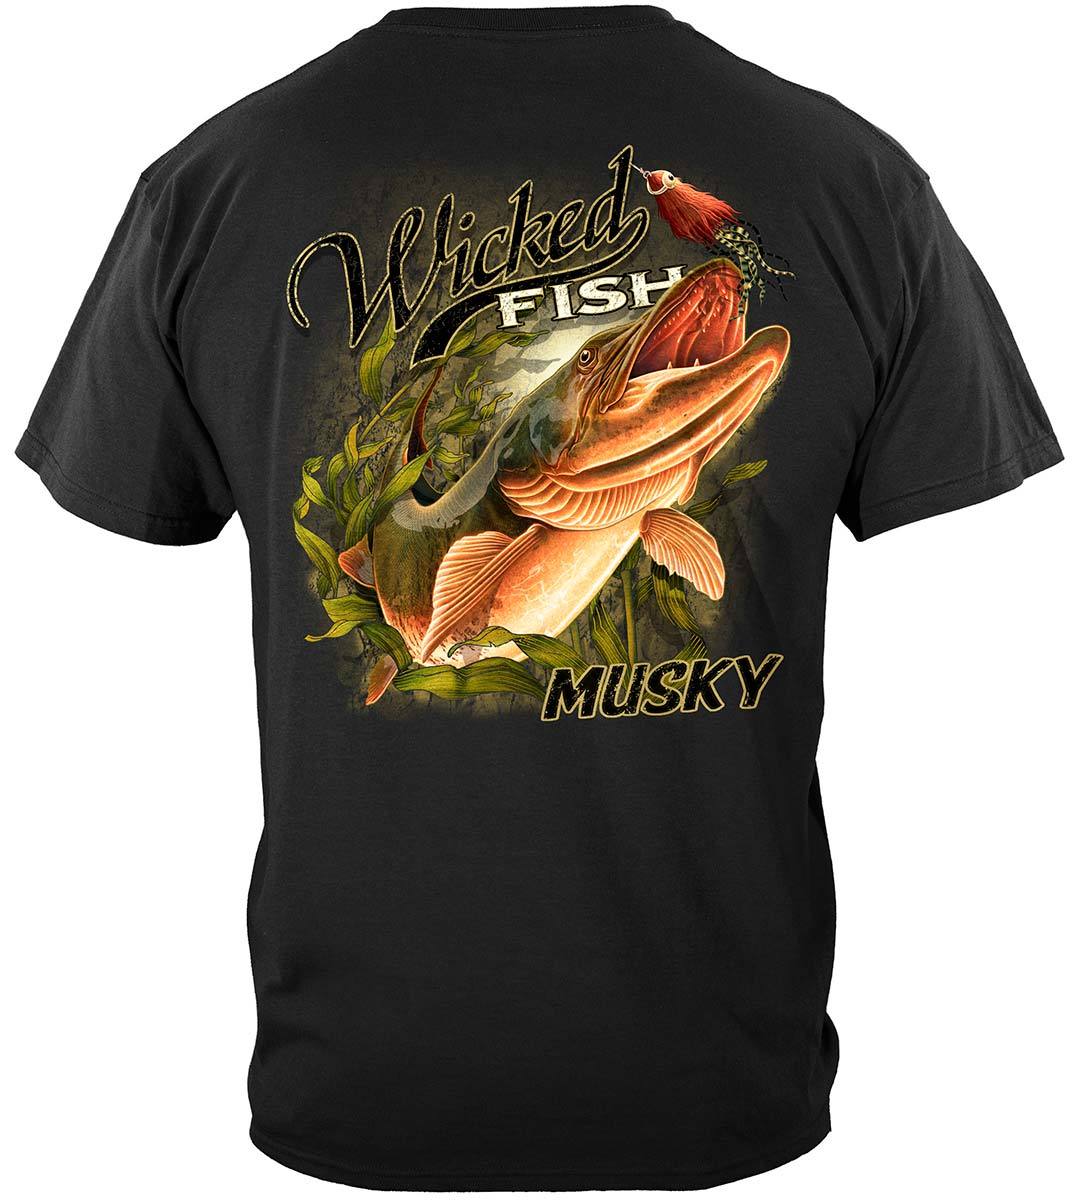 Wicked Fish Muskie Premium T-Shirt